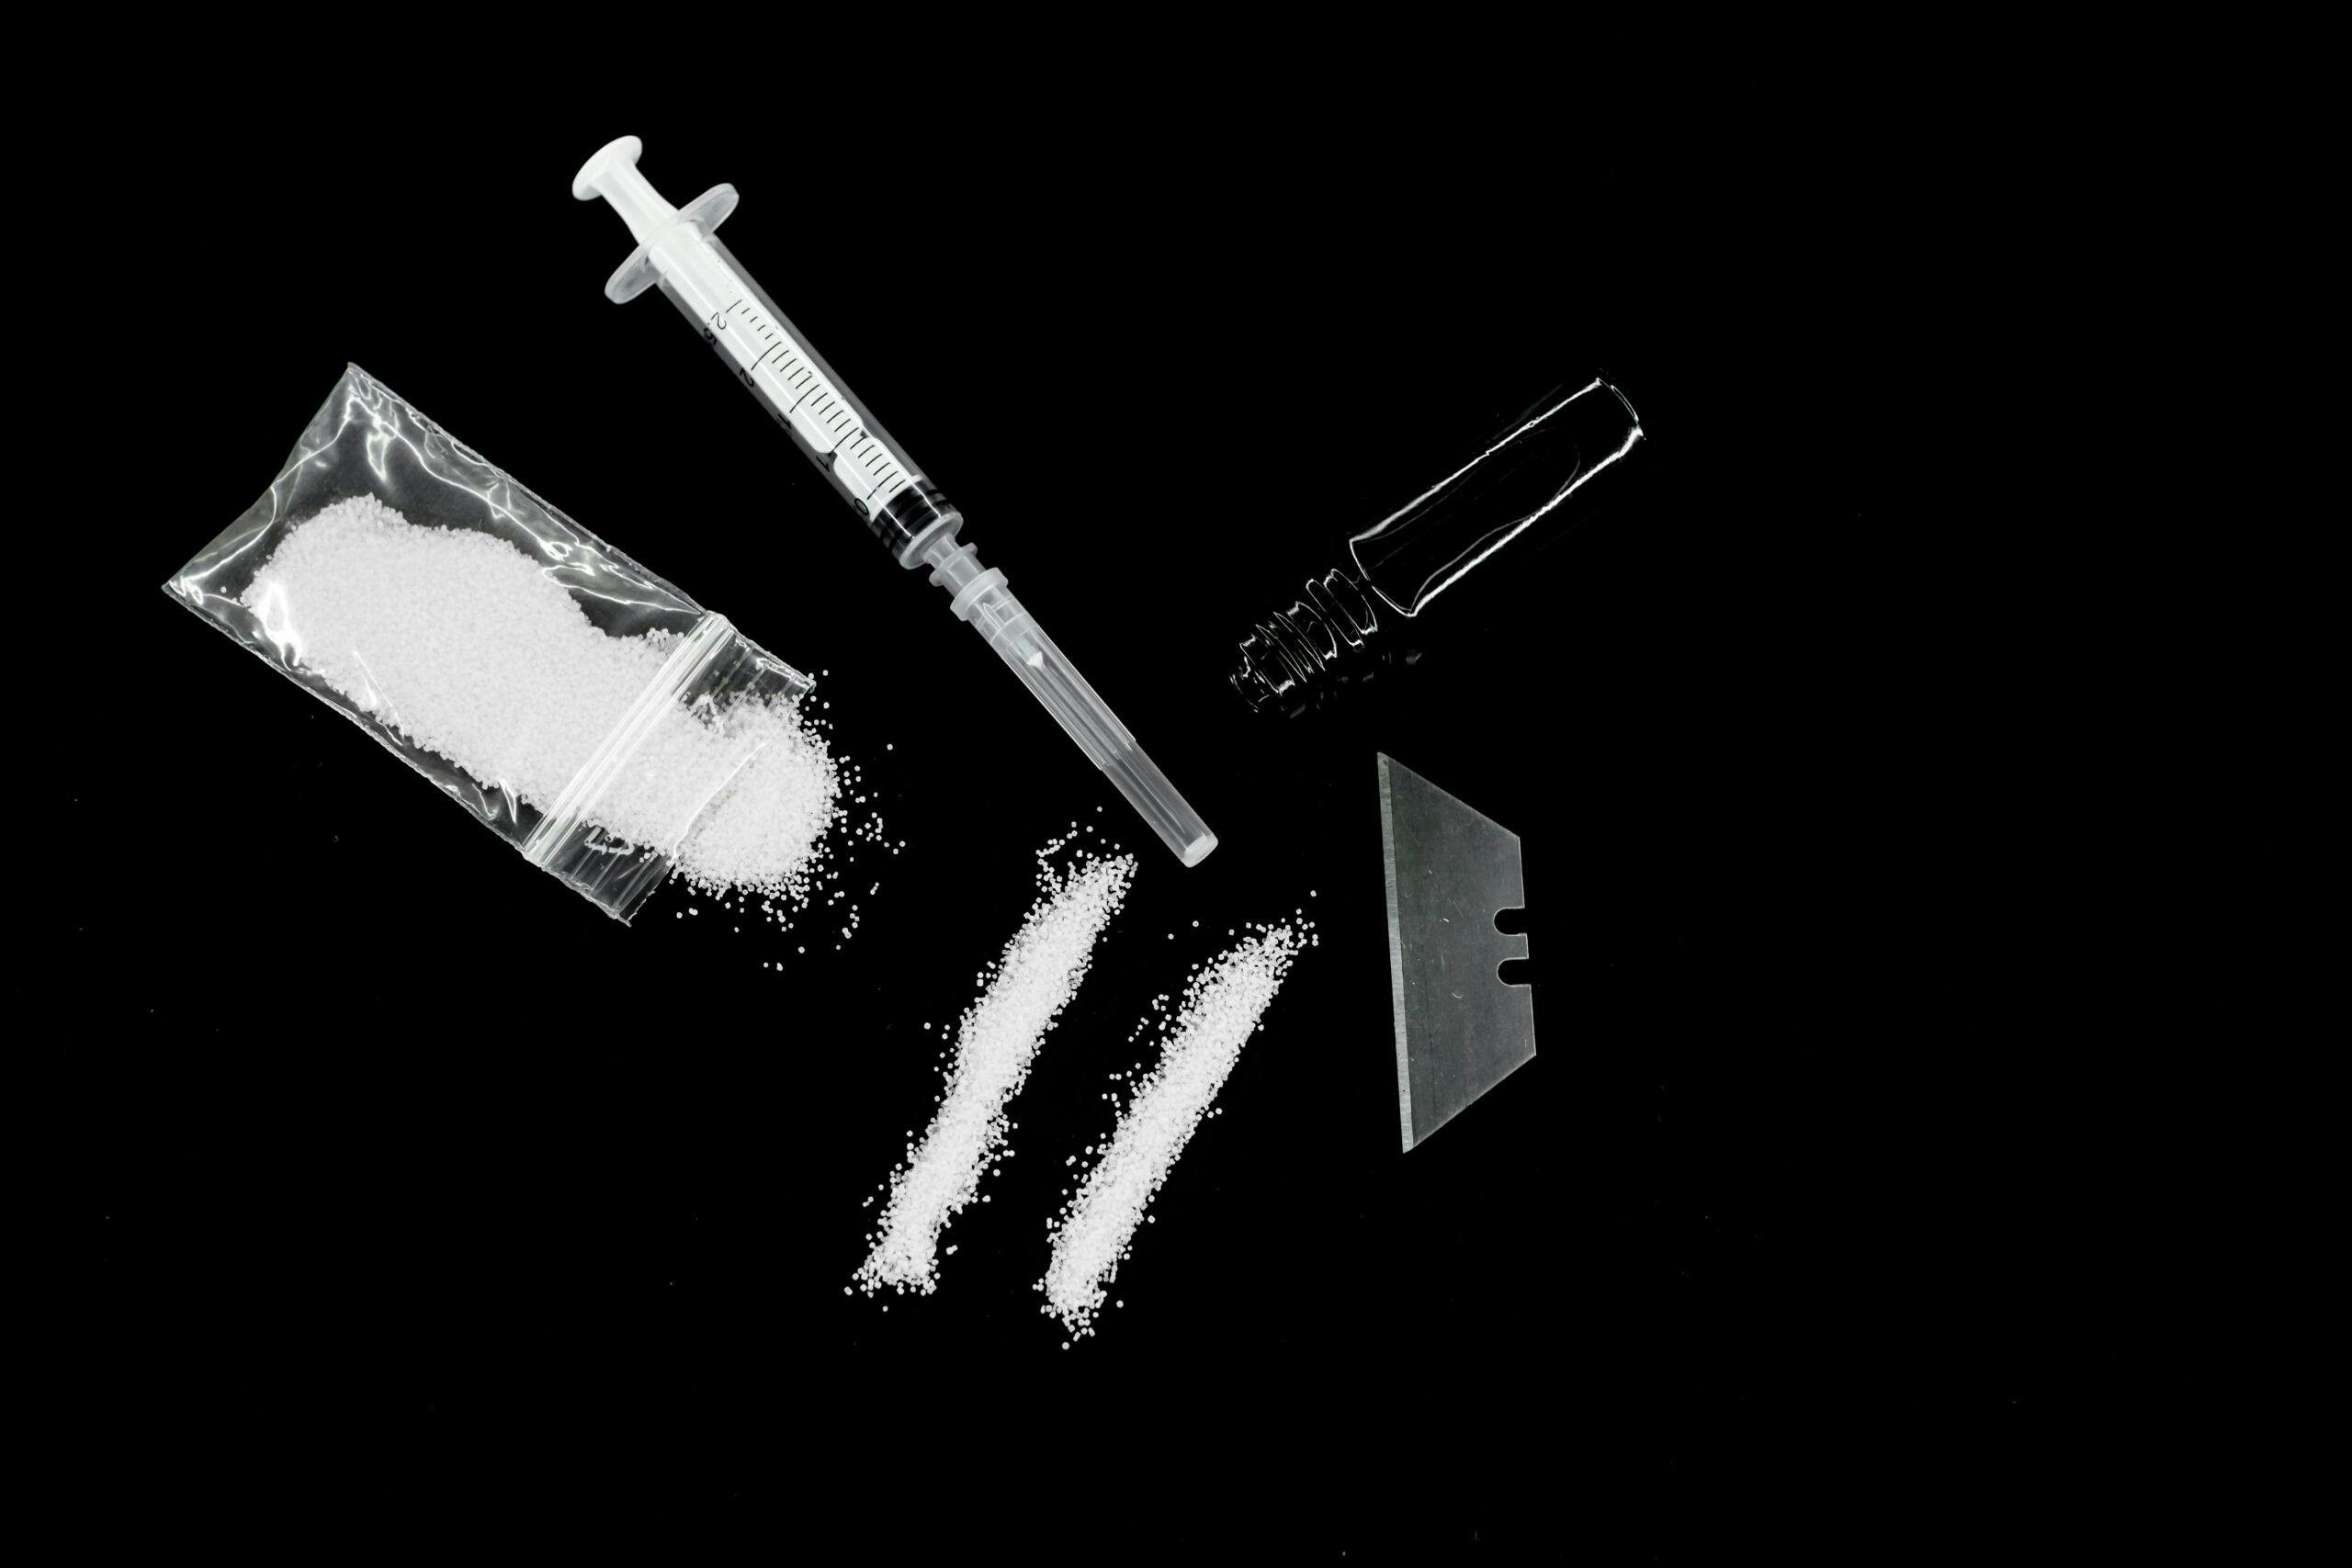 cocaine in bag, lines, syringe, razorblade